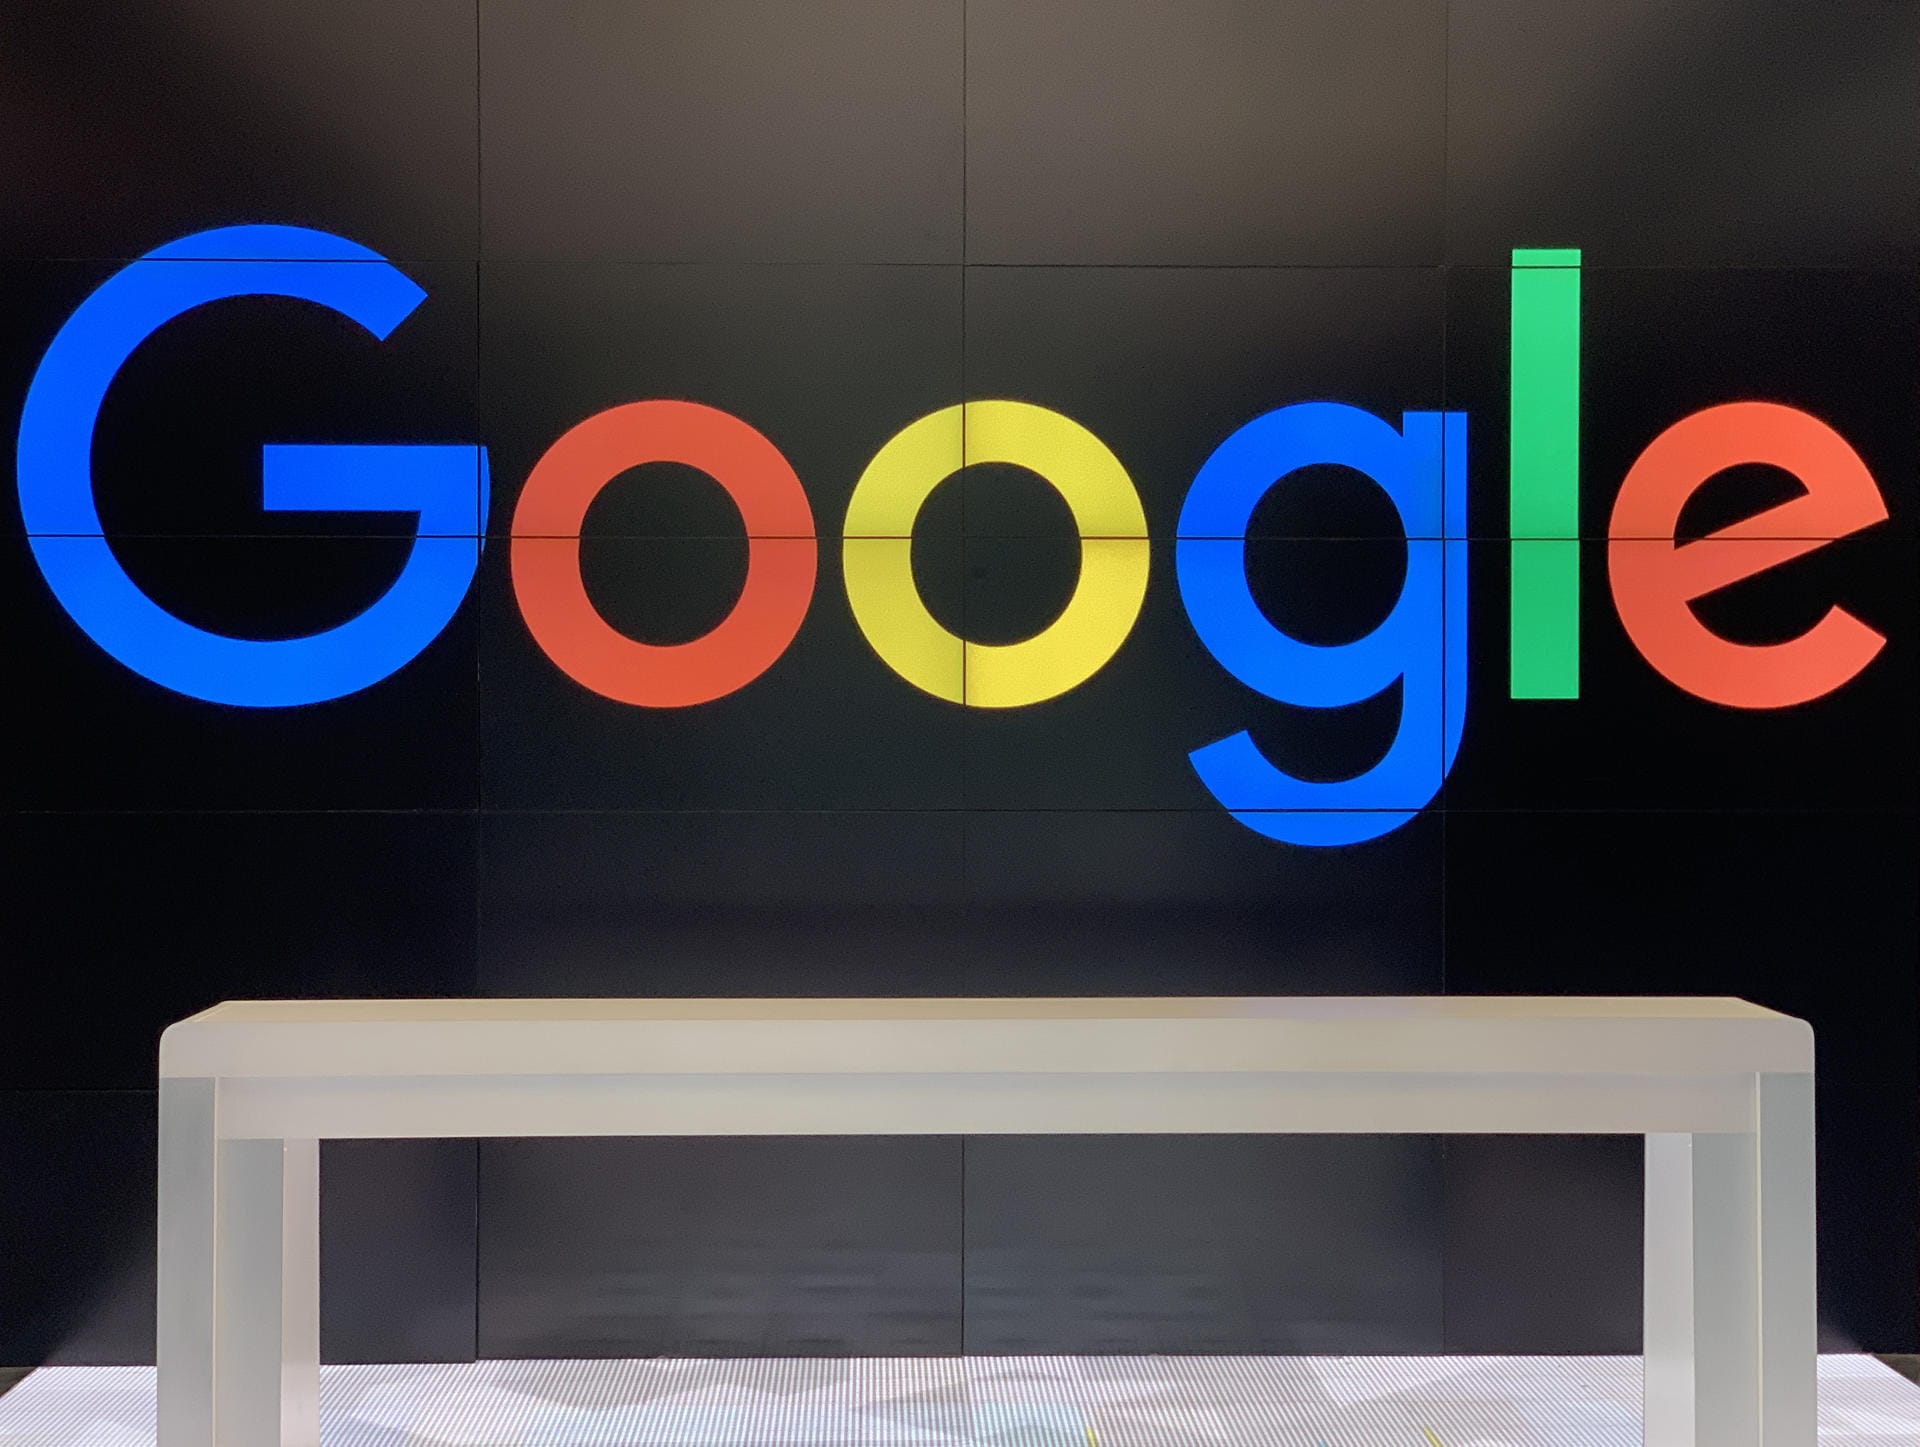 Google stellte auf seiner Entwicklerkonferenz Google I/O die neue Betriebssystem-Version Android Q vor. Die wichtigsten Neuerungen im Überblick.